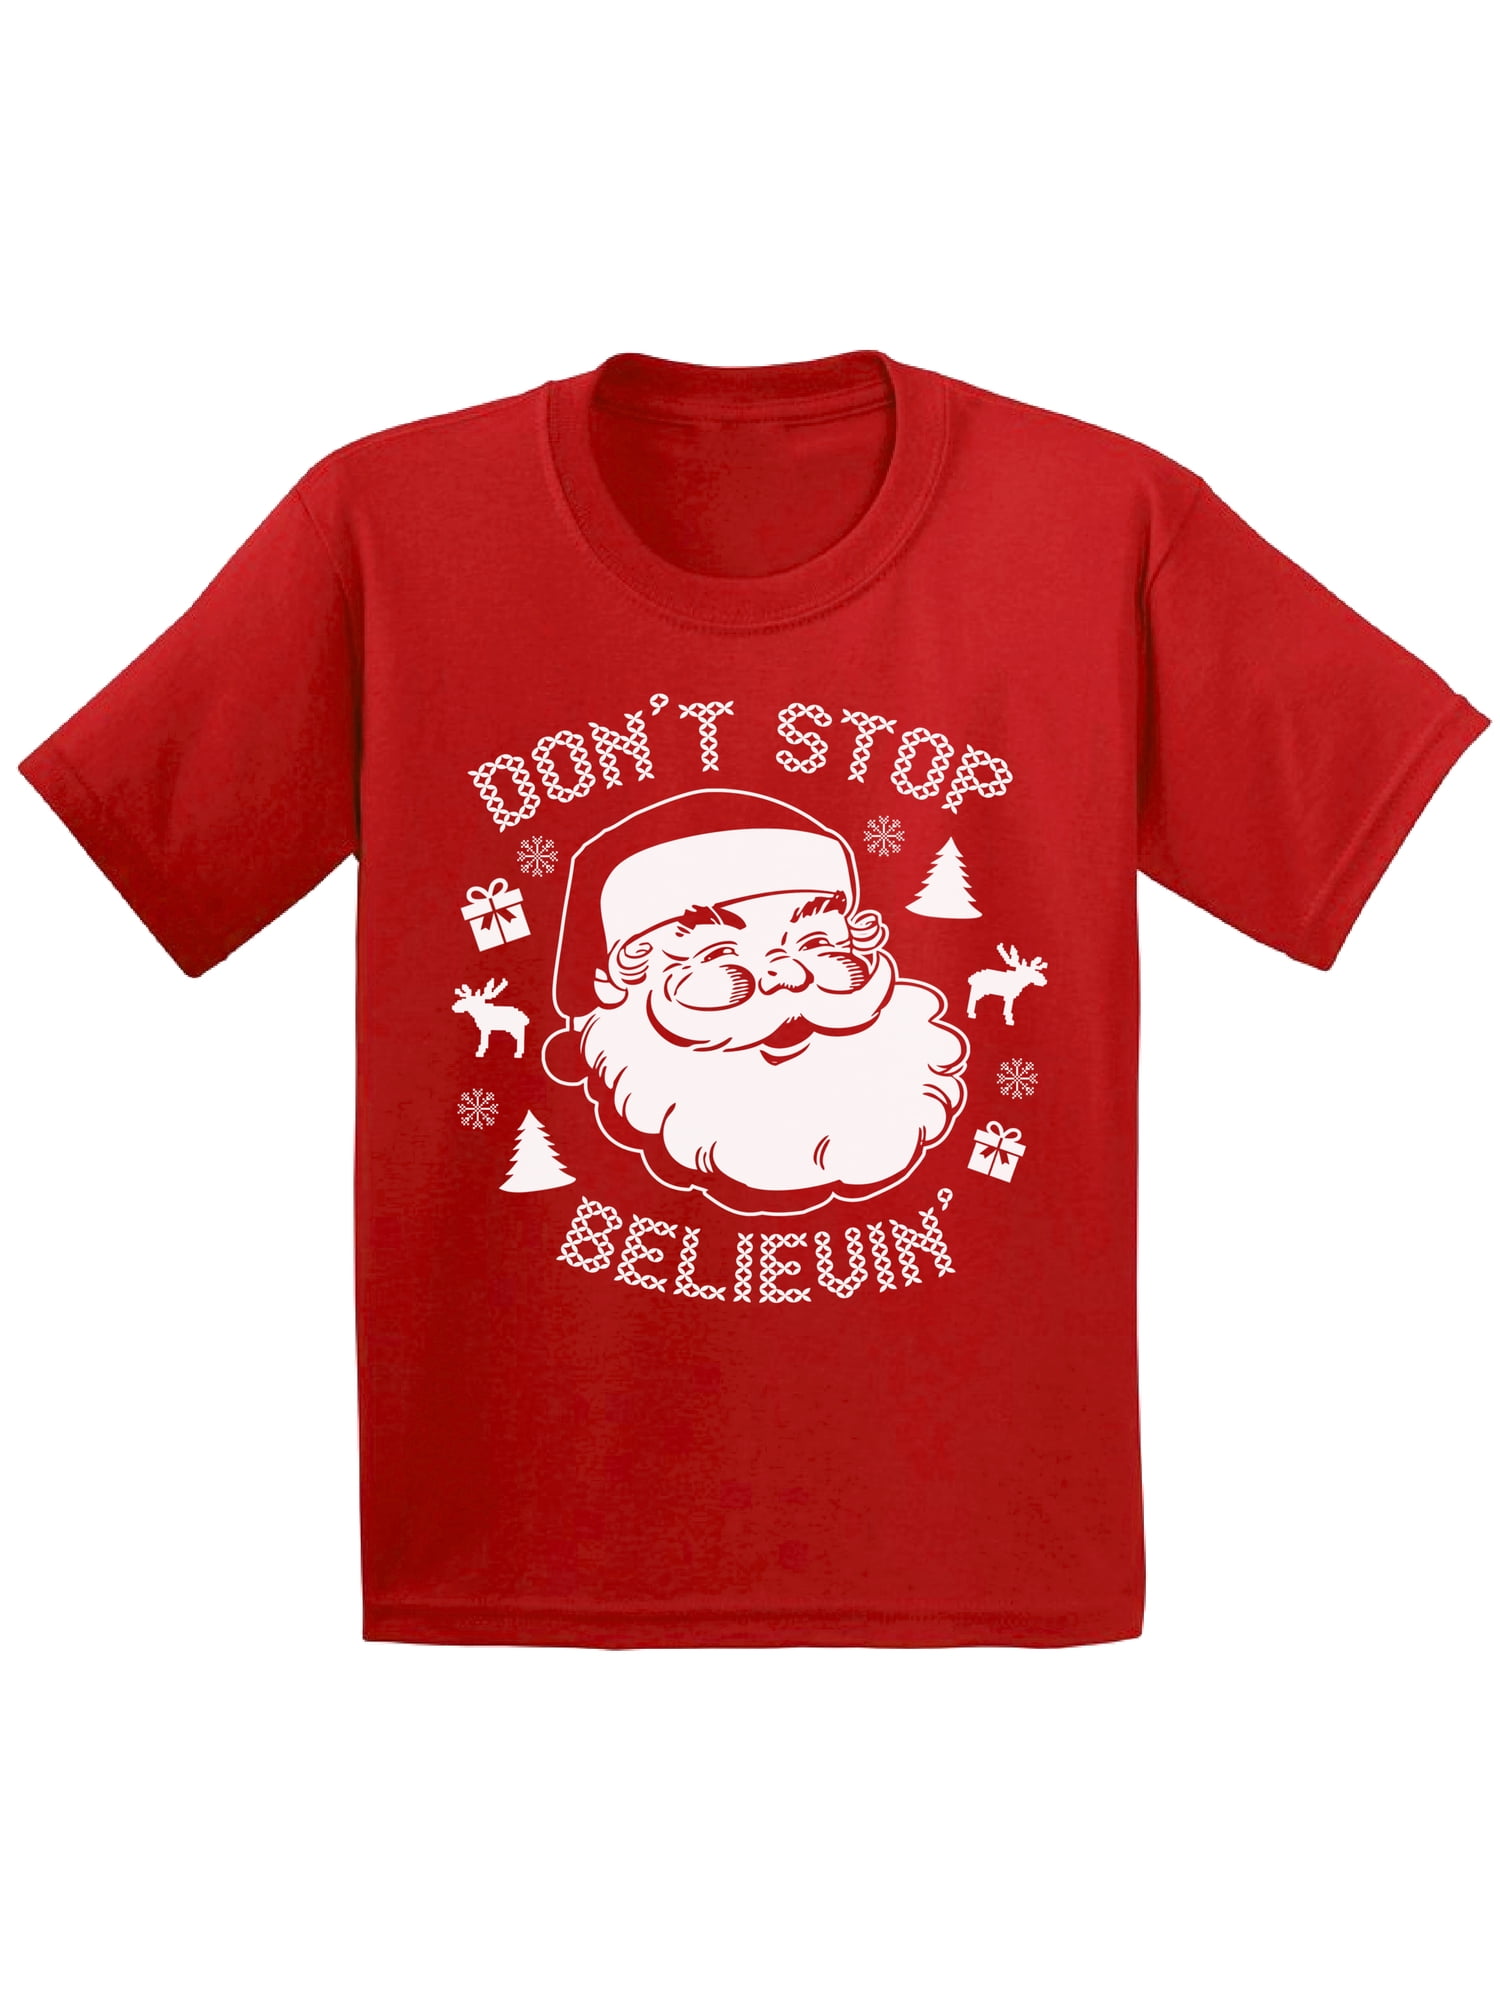 SSLR Youth Big Boys Xmas T Shirts Santa Claus Funny Ugly Christmas Sweater Tee 